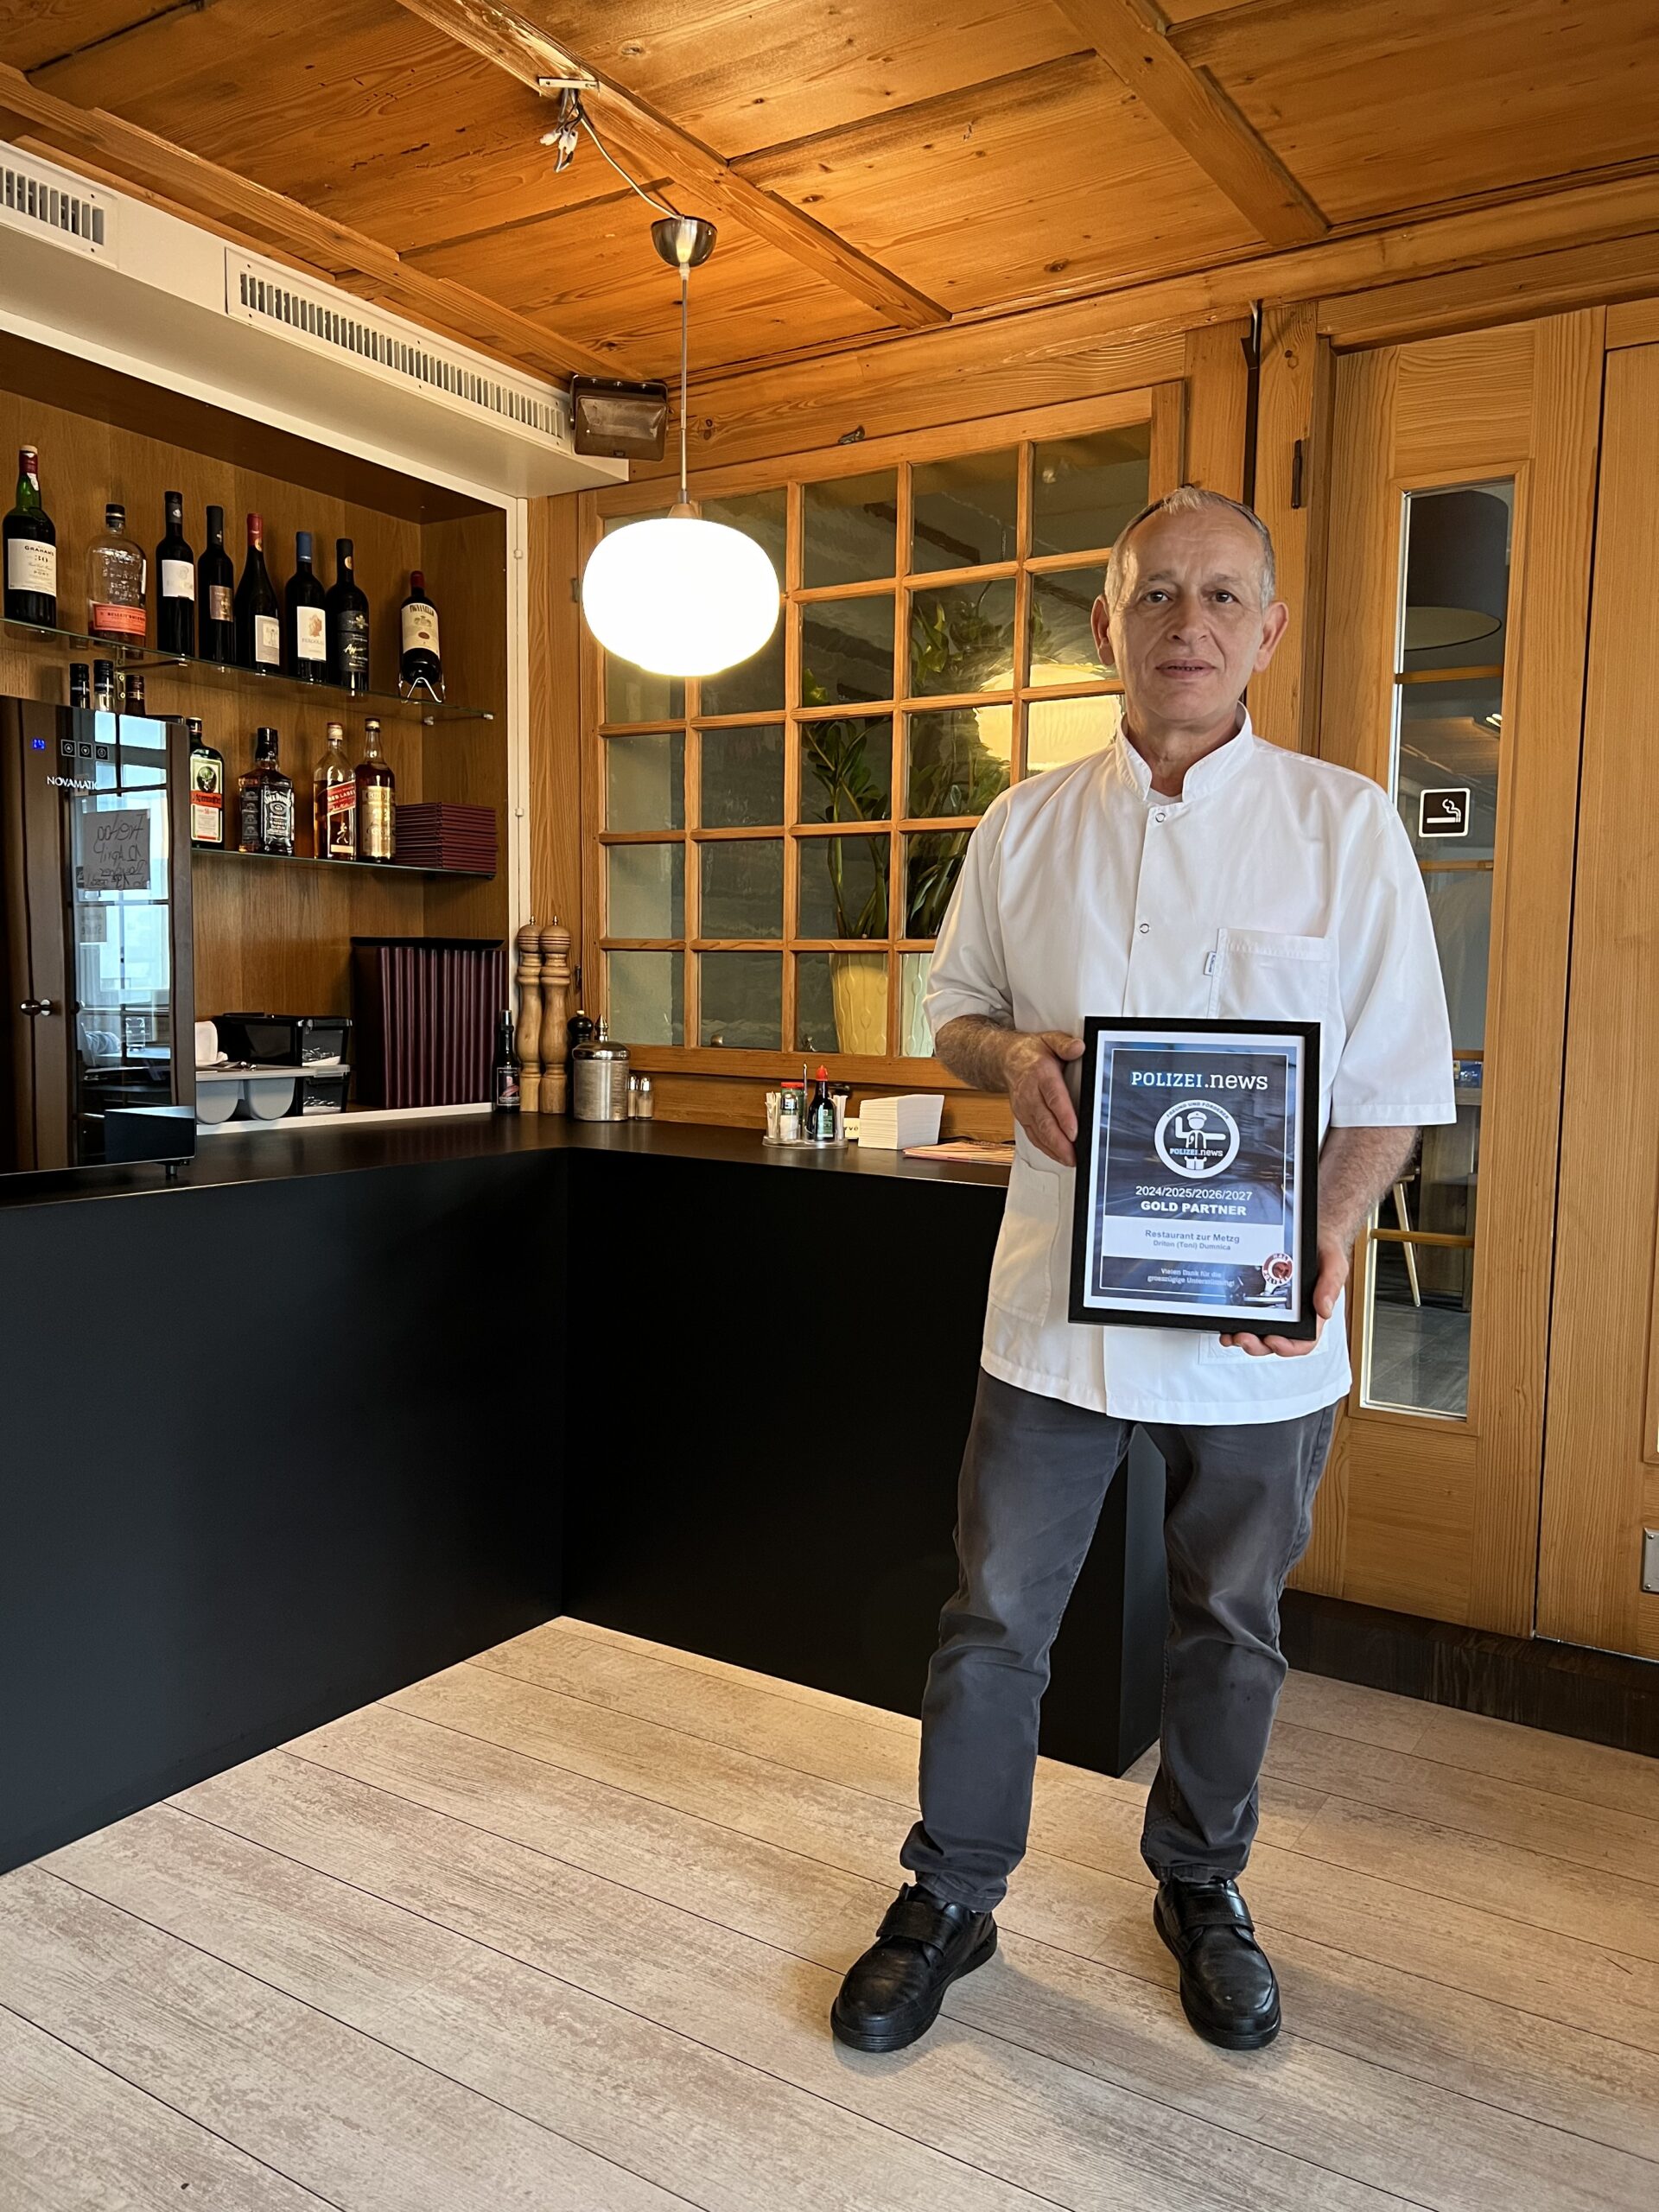 Driton (Toni) Dumnica, Inhaber des Restaurants zur Metzg, mit Gold Partner-Urkunde von Polizei.news (Bild: © Philipp Ochsner)